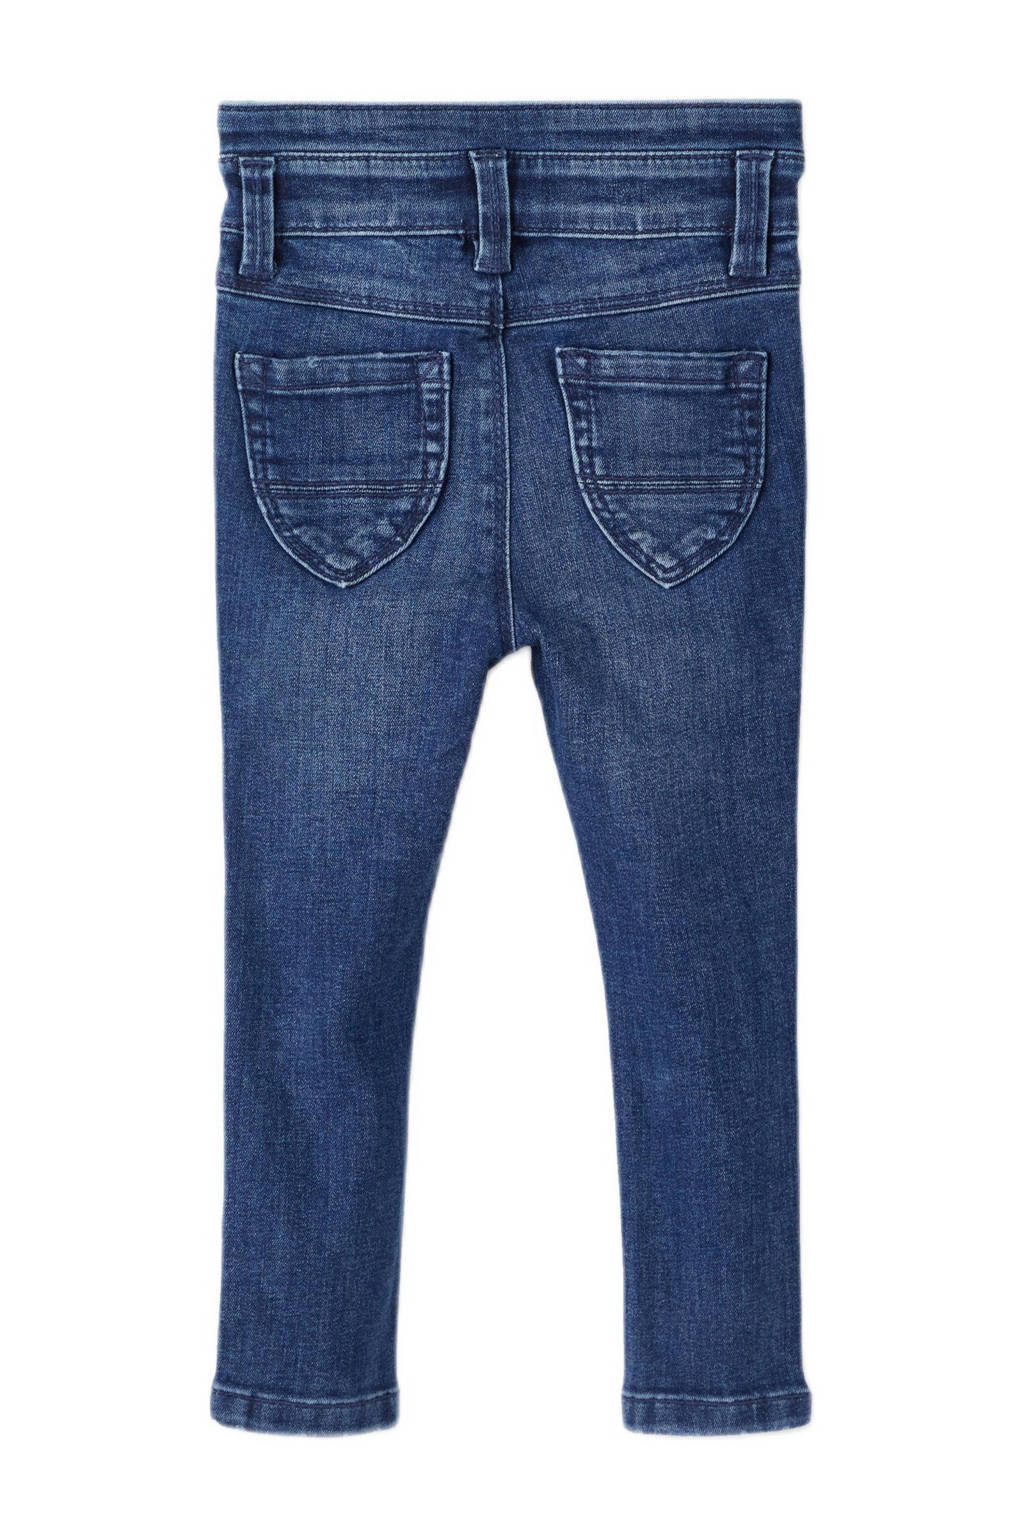 NAME IT MINI skinny NMFPOLLY denim jeans dark blue